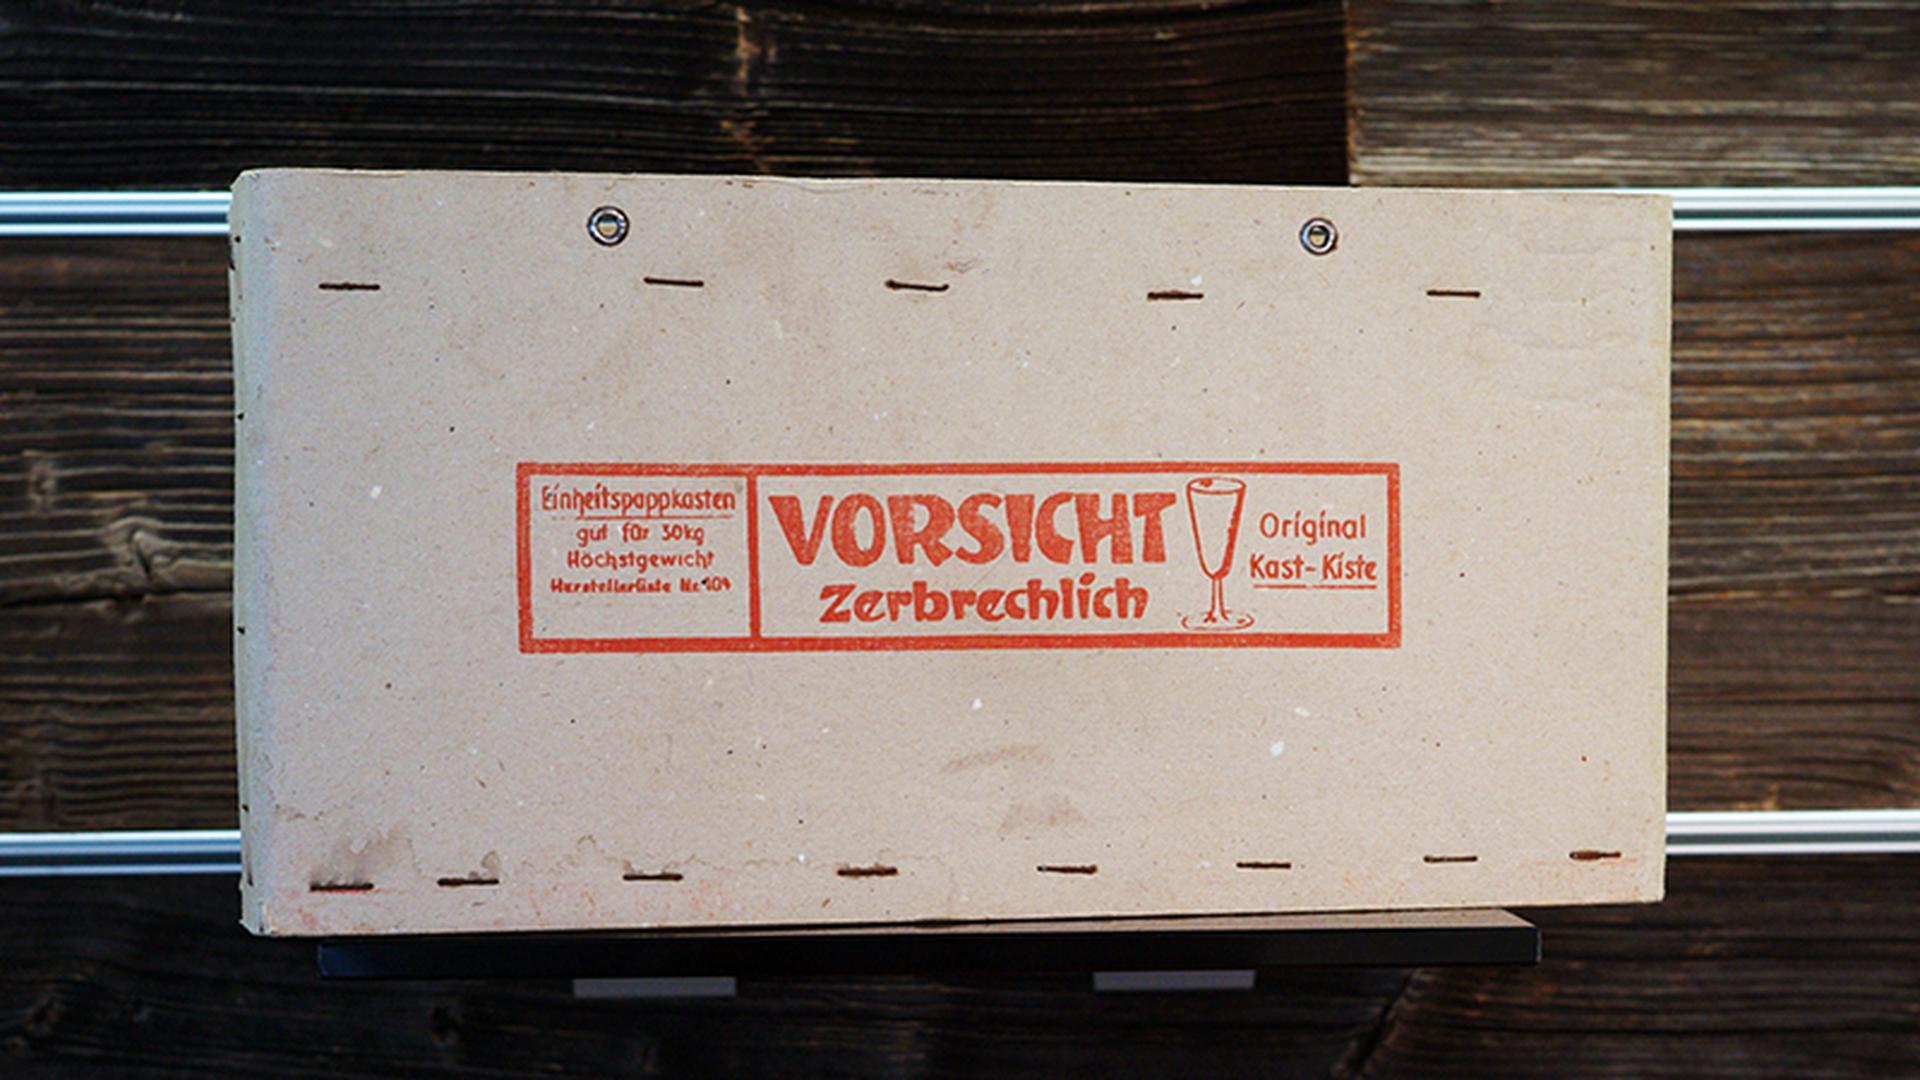 Historische „Original Kast-Kiste“ von 1910 an produziert bis Mitte des 20. Jahrhunderts